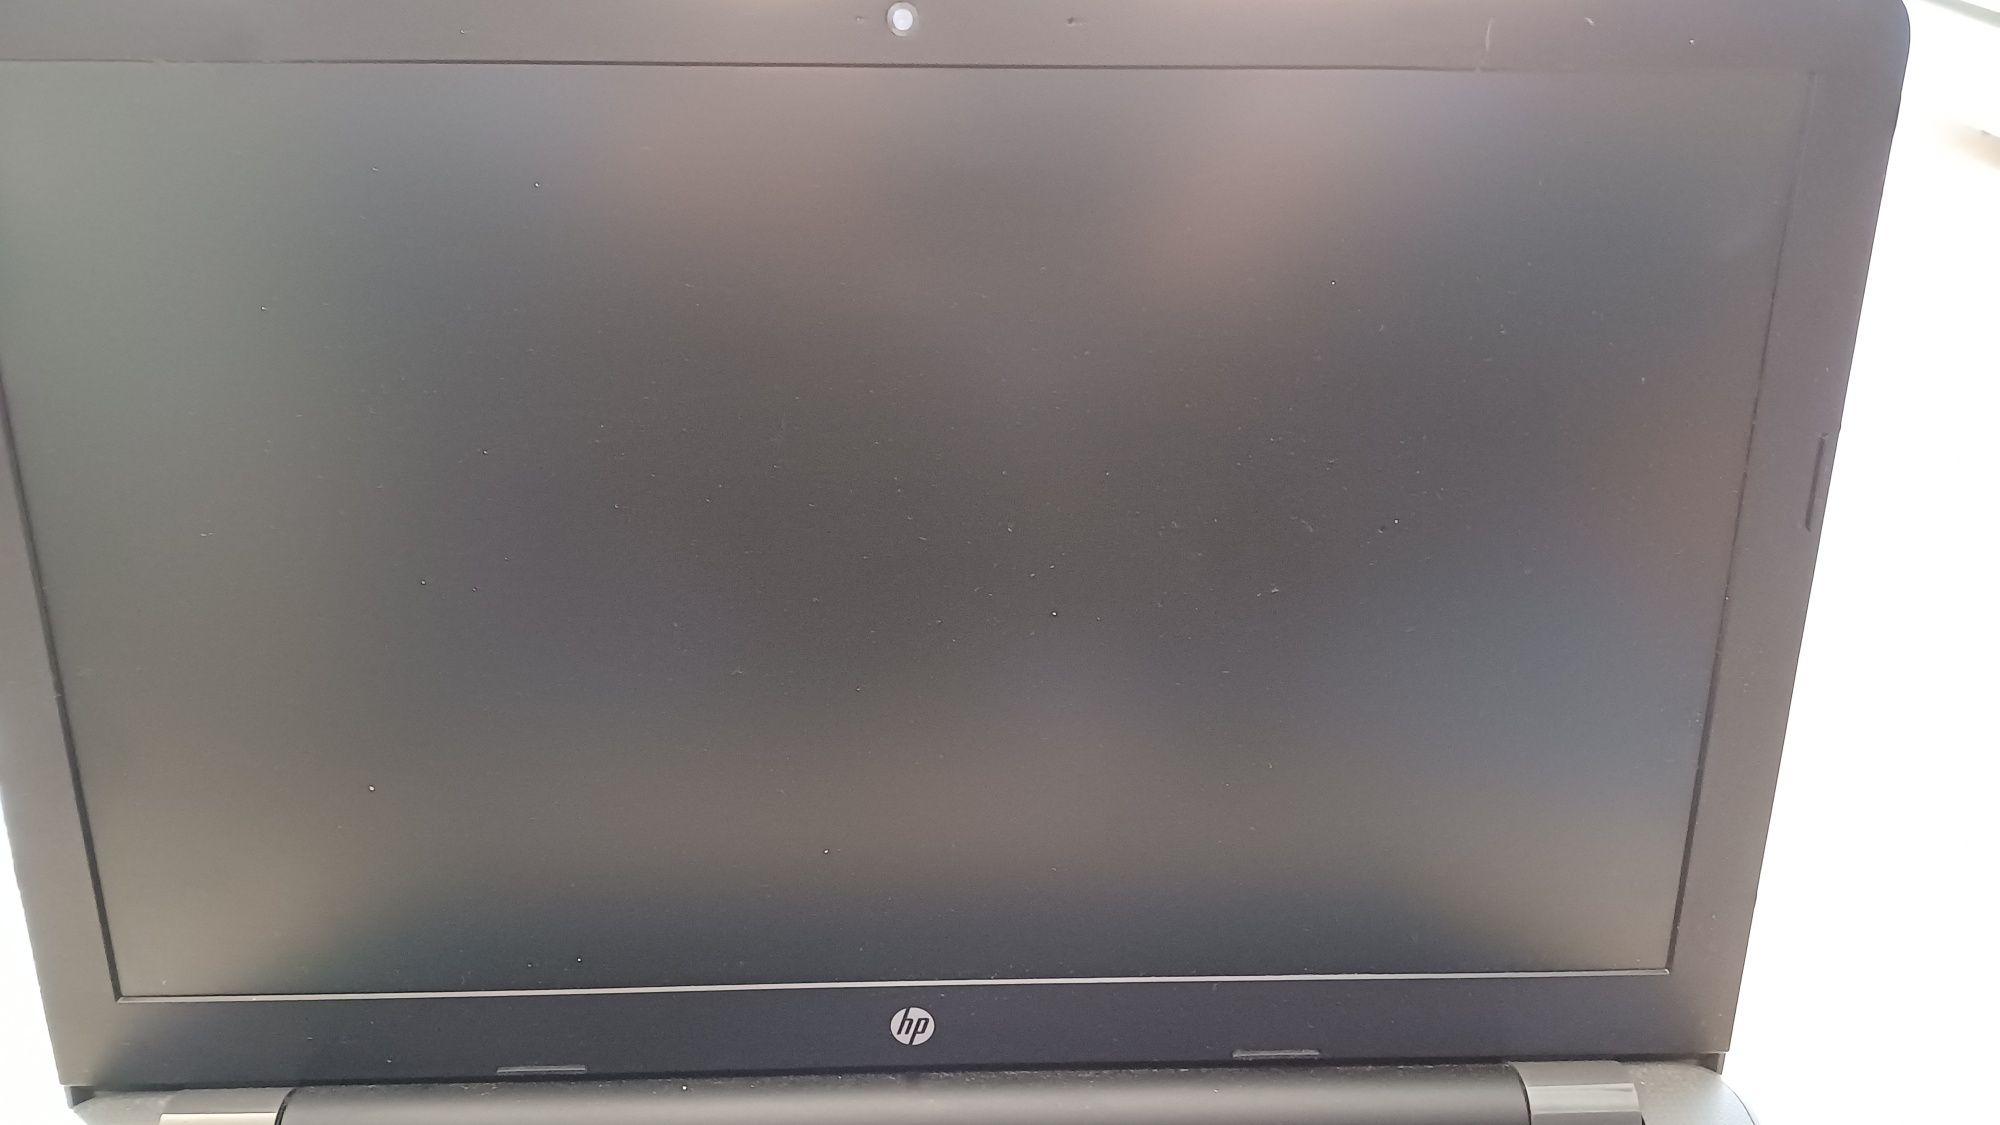 Laptop HP 3168NGW Intel Celeron, 4GB, 500GB HDD